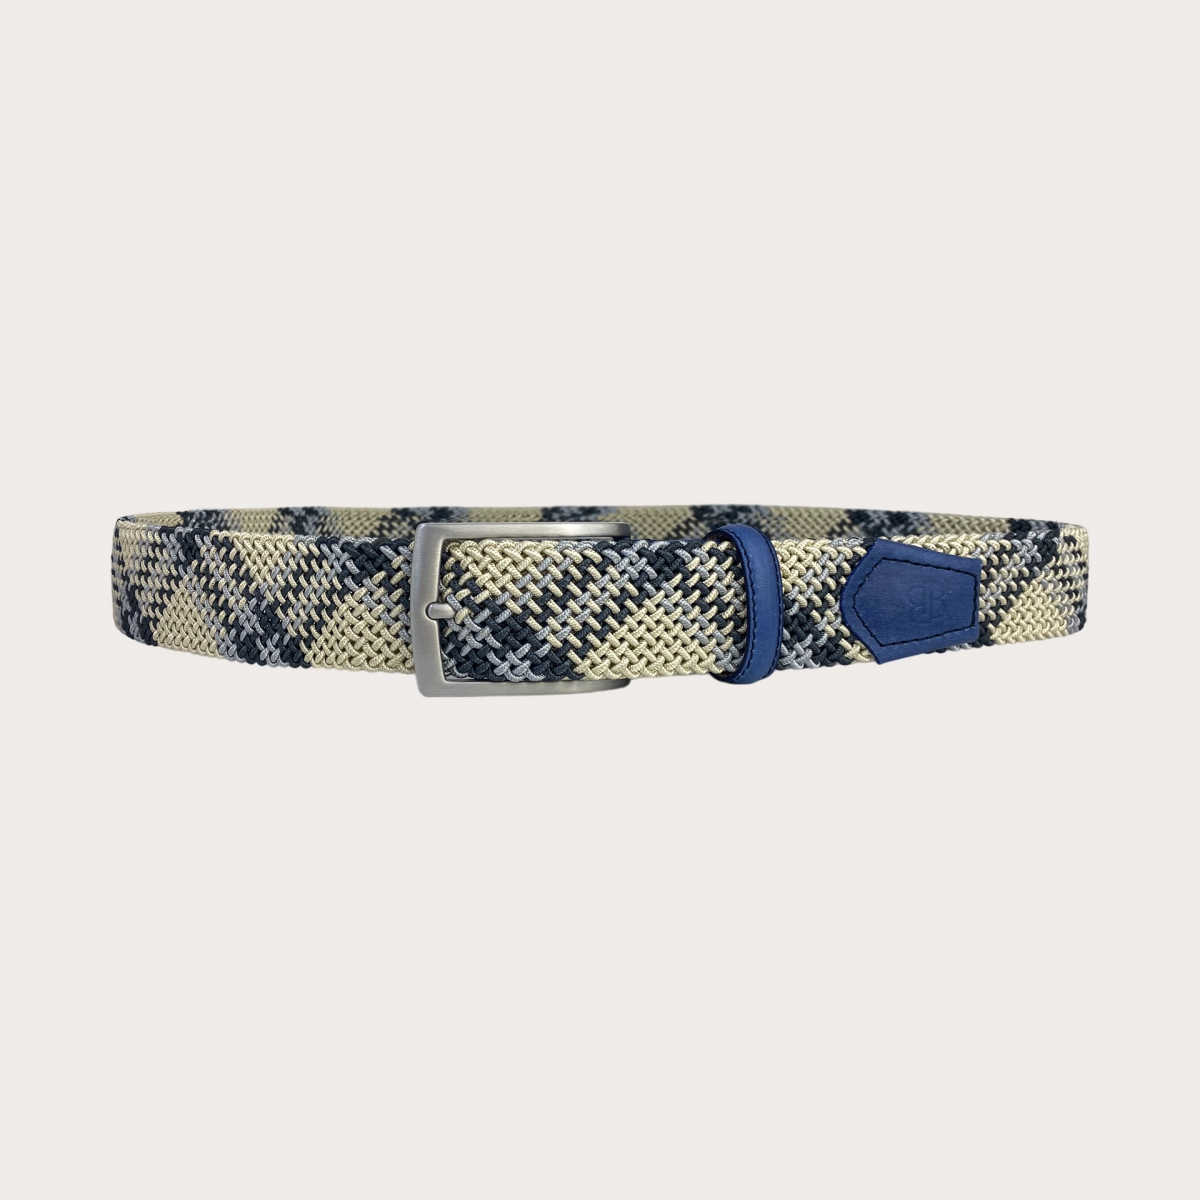 Cinturón elástico tubular trenzado azul con patrón en celeste y beige